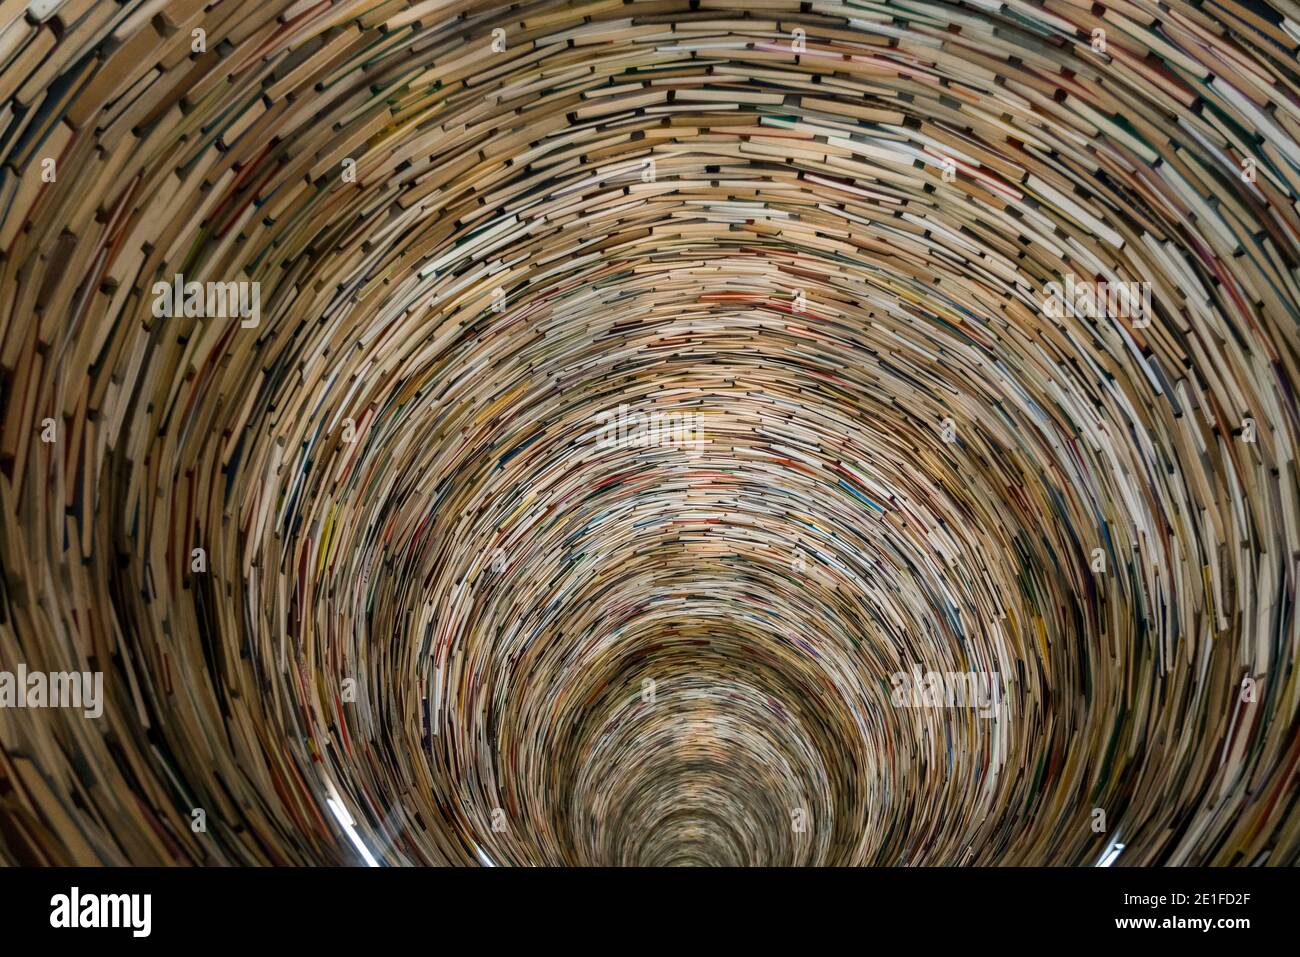 Kunstwerk namens Idiom von Matej Kren im Jahr 1998 entworfen ist ein Buchtunnel aus 8000 Büchern, Stadtbibliothek von Prag, Prag, Böhmen, Tschechische Republik Stockfoto